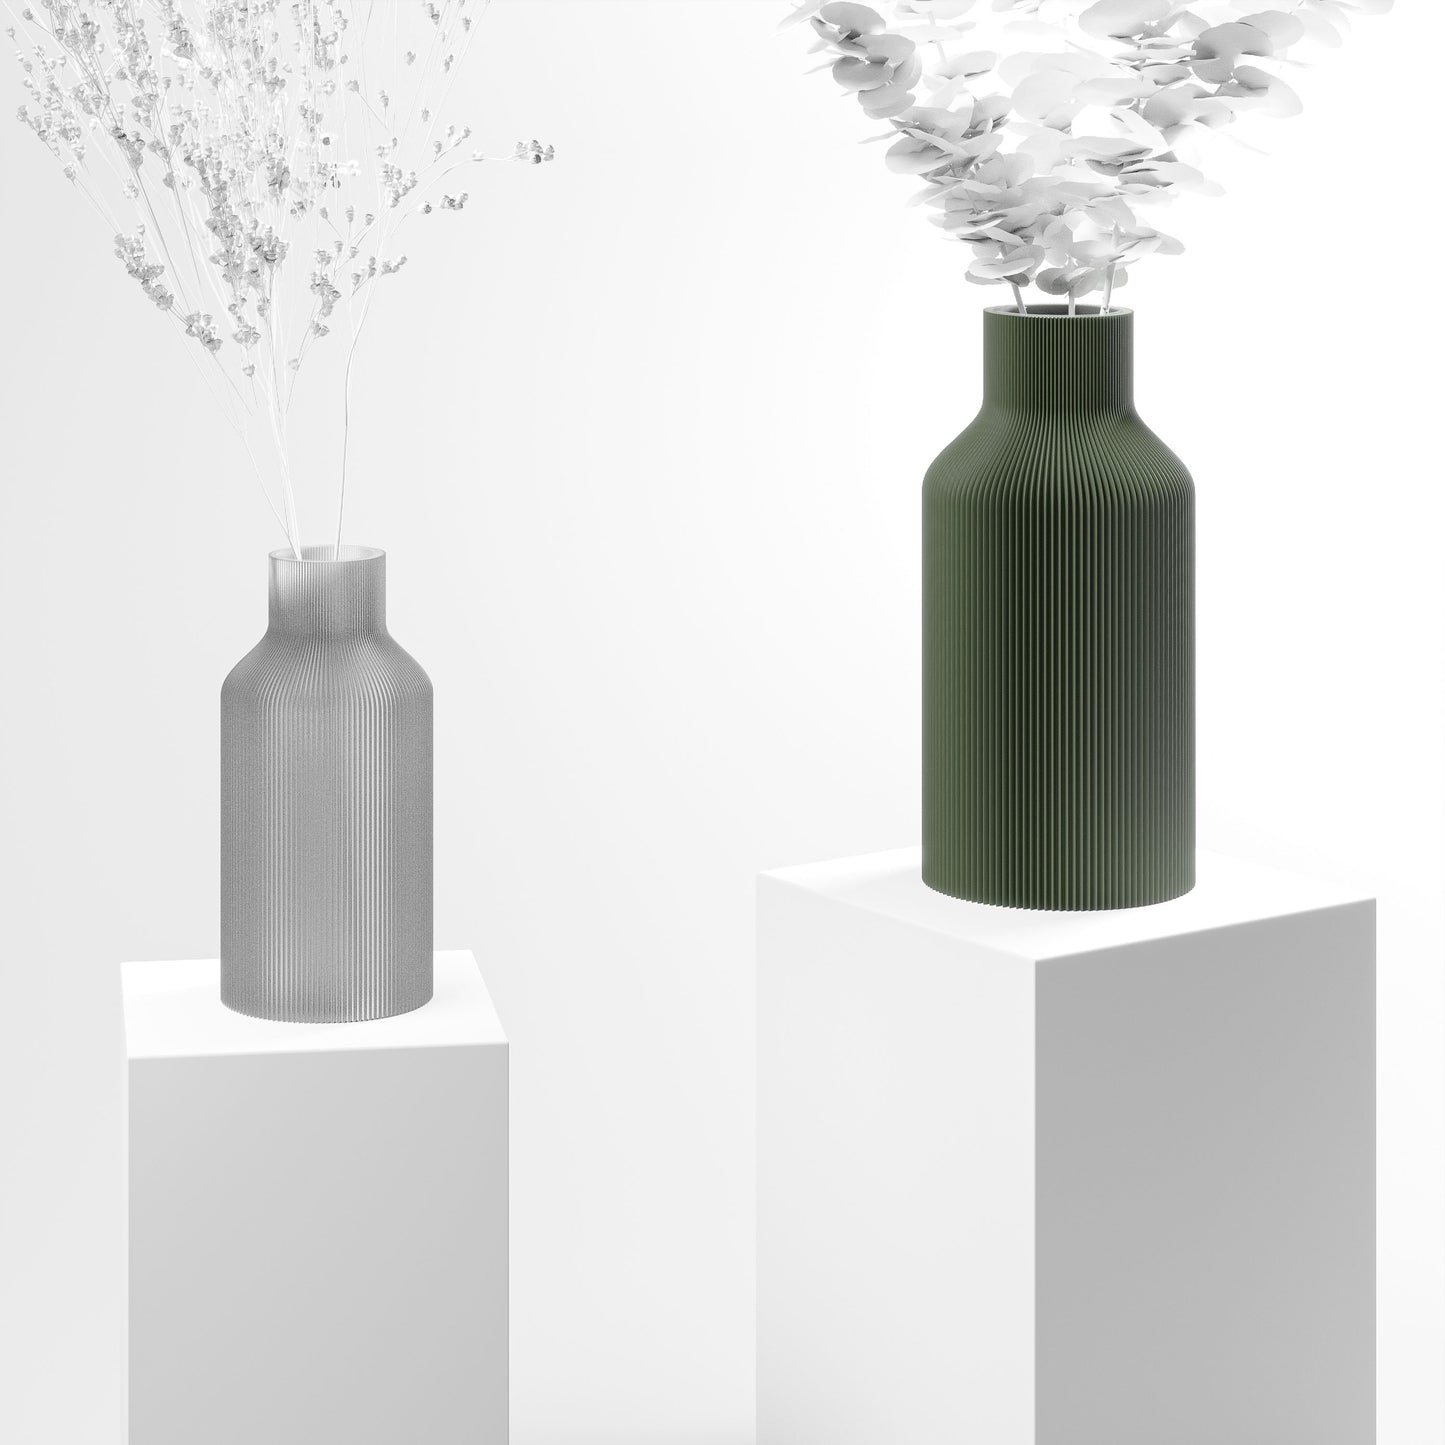 Stylische 3D Druck Vase mit feinen Rillen | 100% recyclebar | Form: Flasche | Farbe: grün matt 